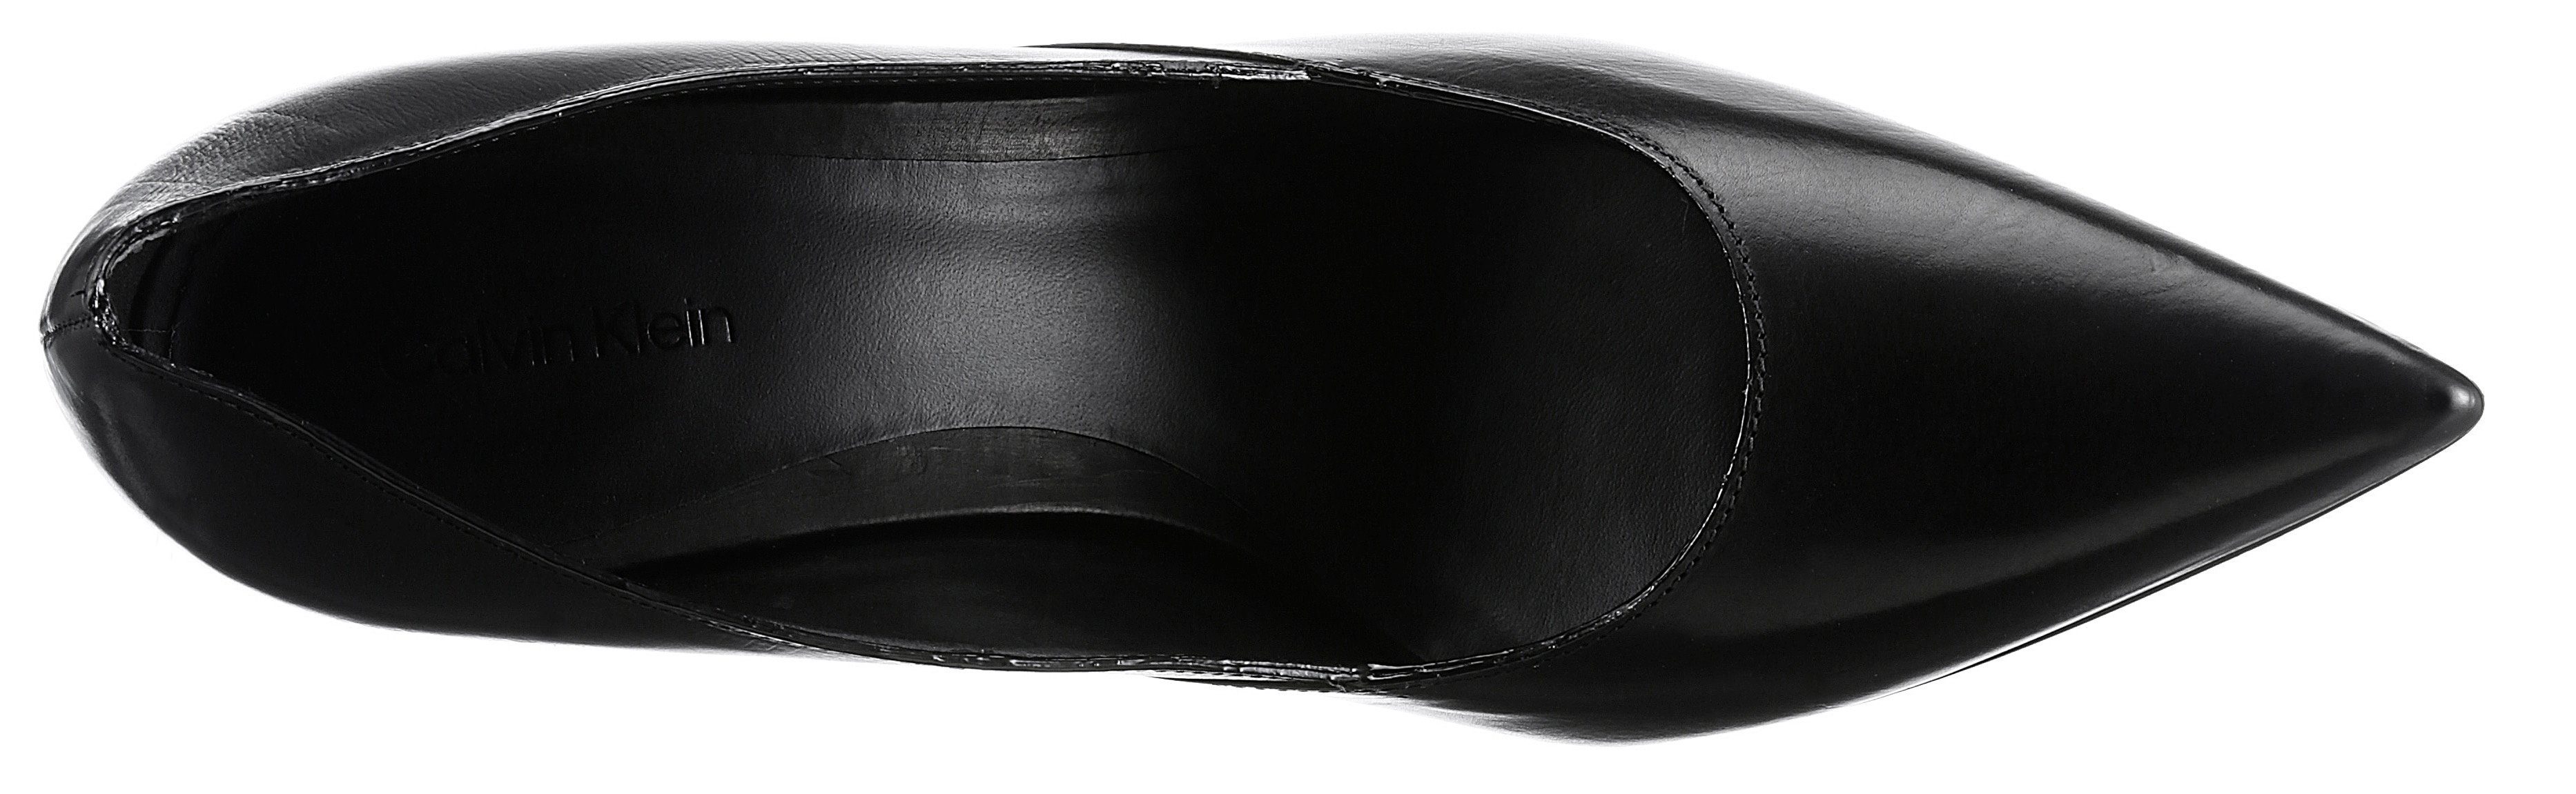 Pumps GEO Form 90 modischem PUMP schwarz mit STILETTO Stilettoabsatz, Klein Calvin spitze